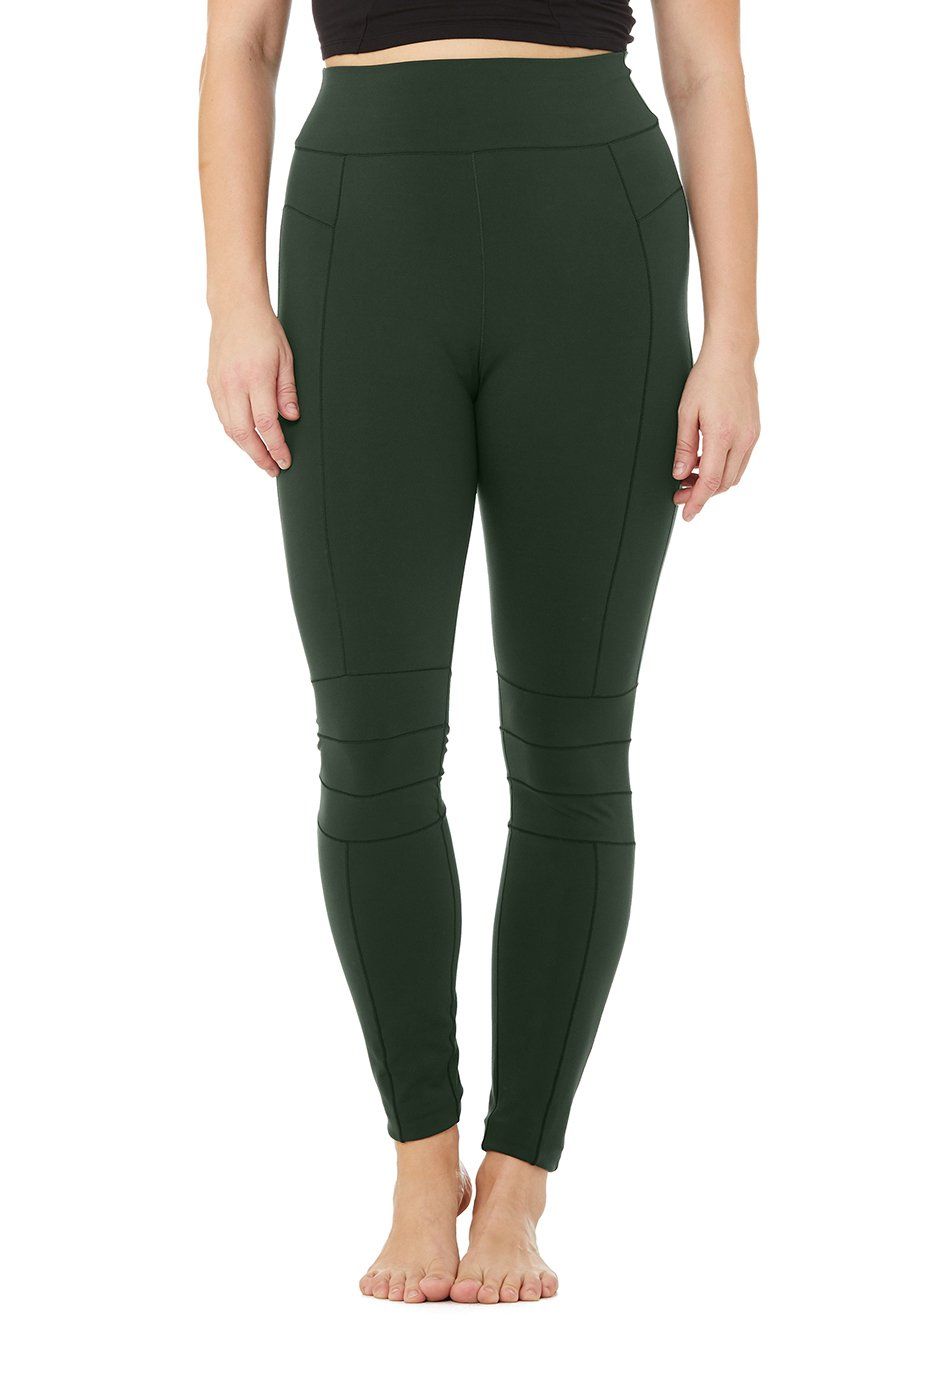 $114 Alo Yoga Women's Gray High-Waisted Moto Legging Pants Size